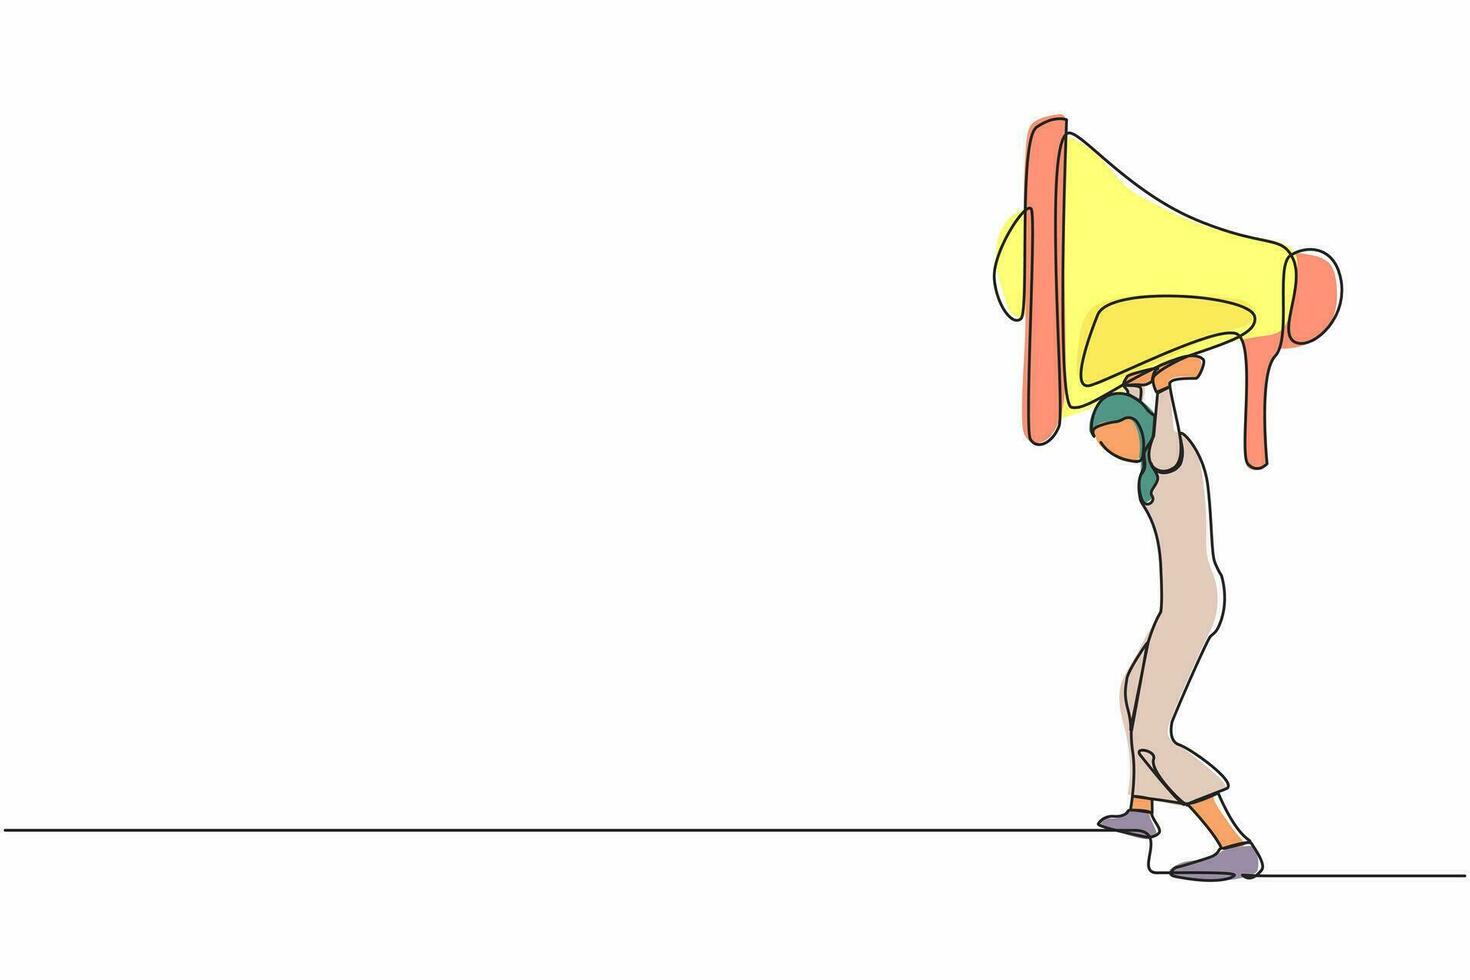 soltero continuo línea dibujo árabe mujer de negocios que lleva pesado megáfono en su atrás. conflicto y problema en comunicación. acoso, acoso a trabajar. uno línea dibujar diseño vector ilustración